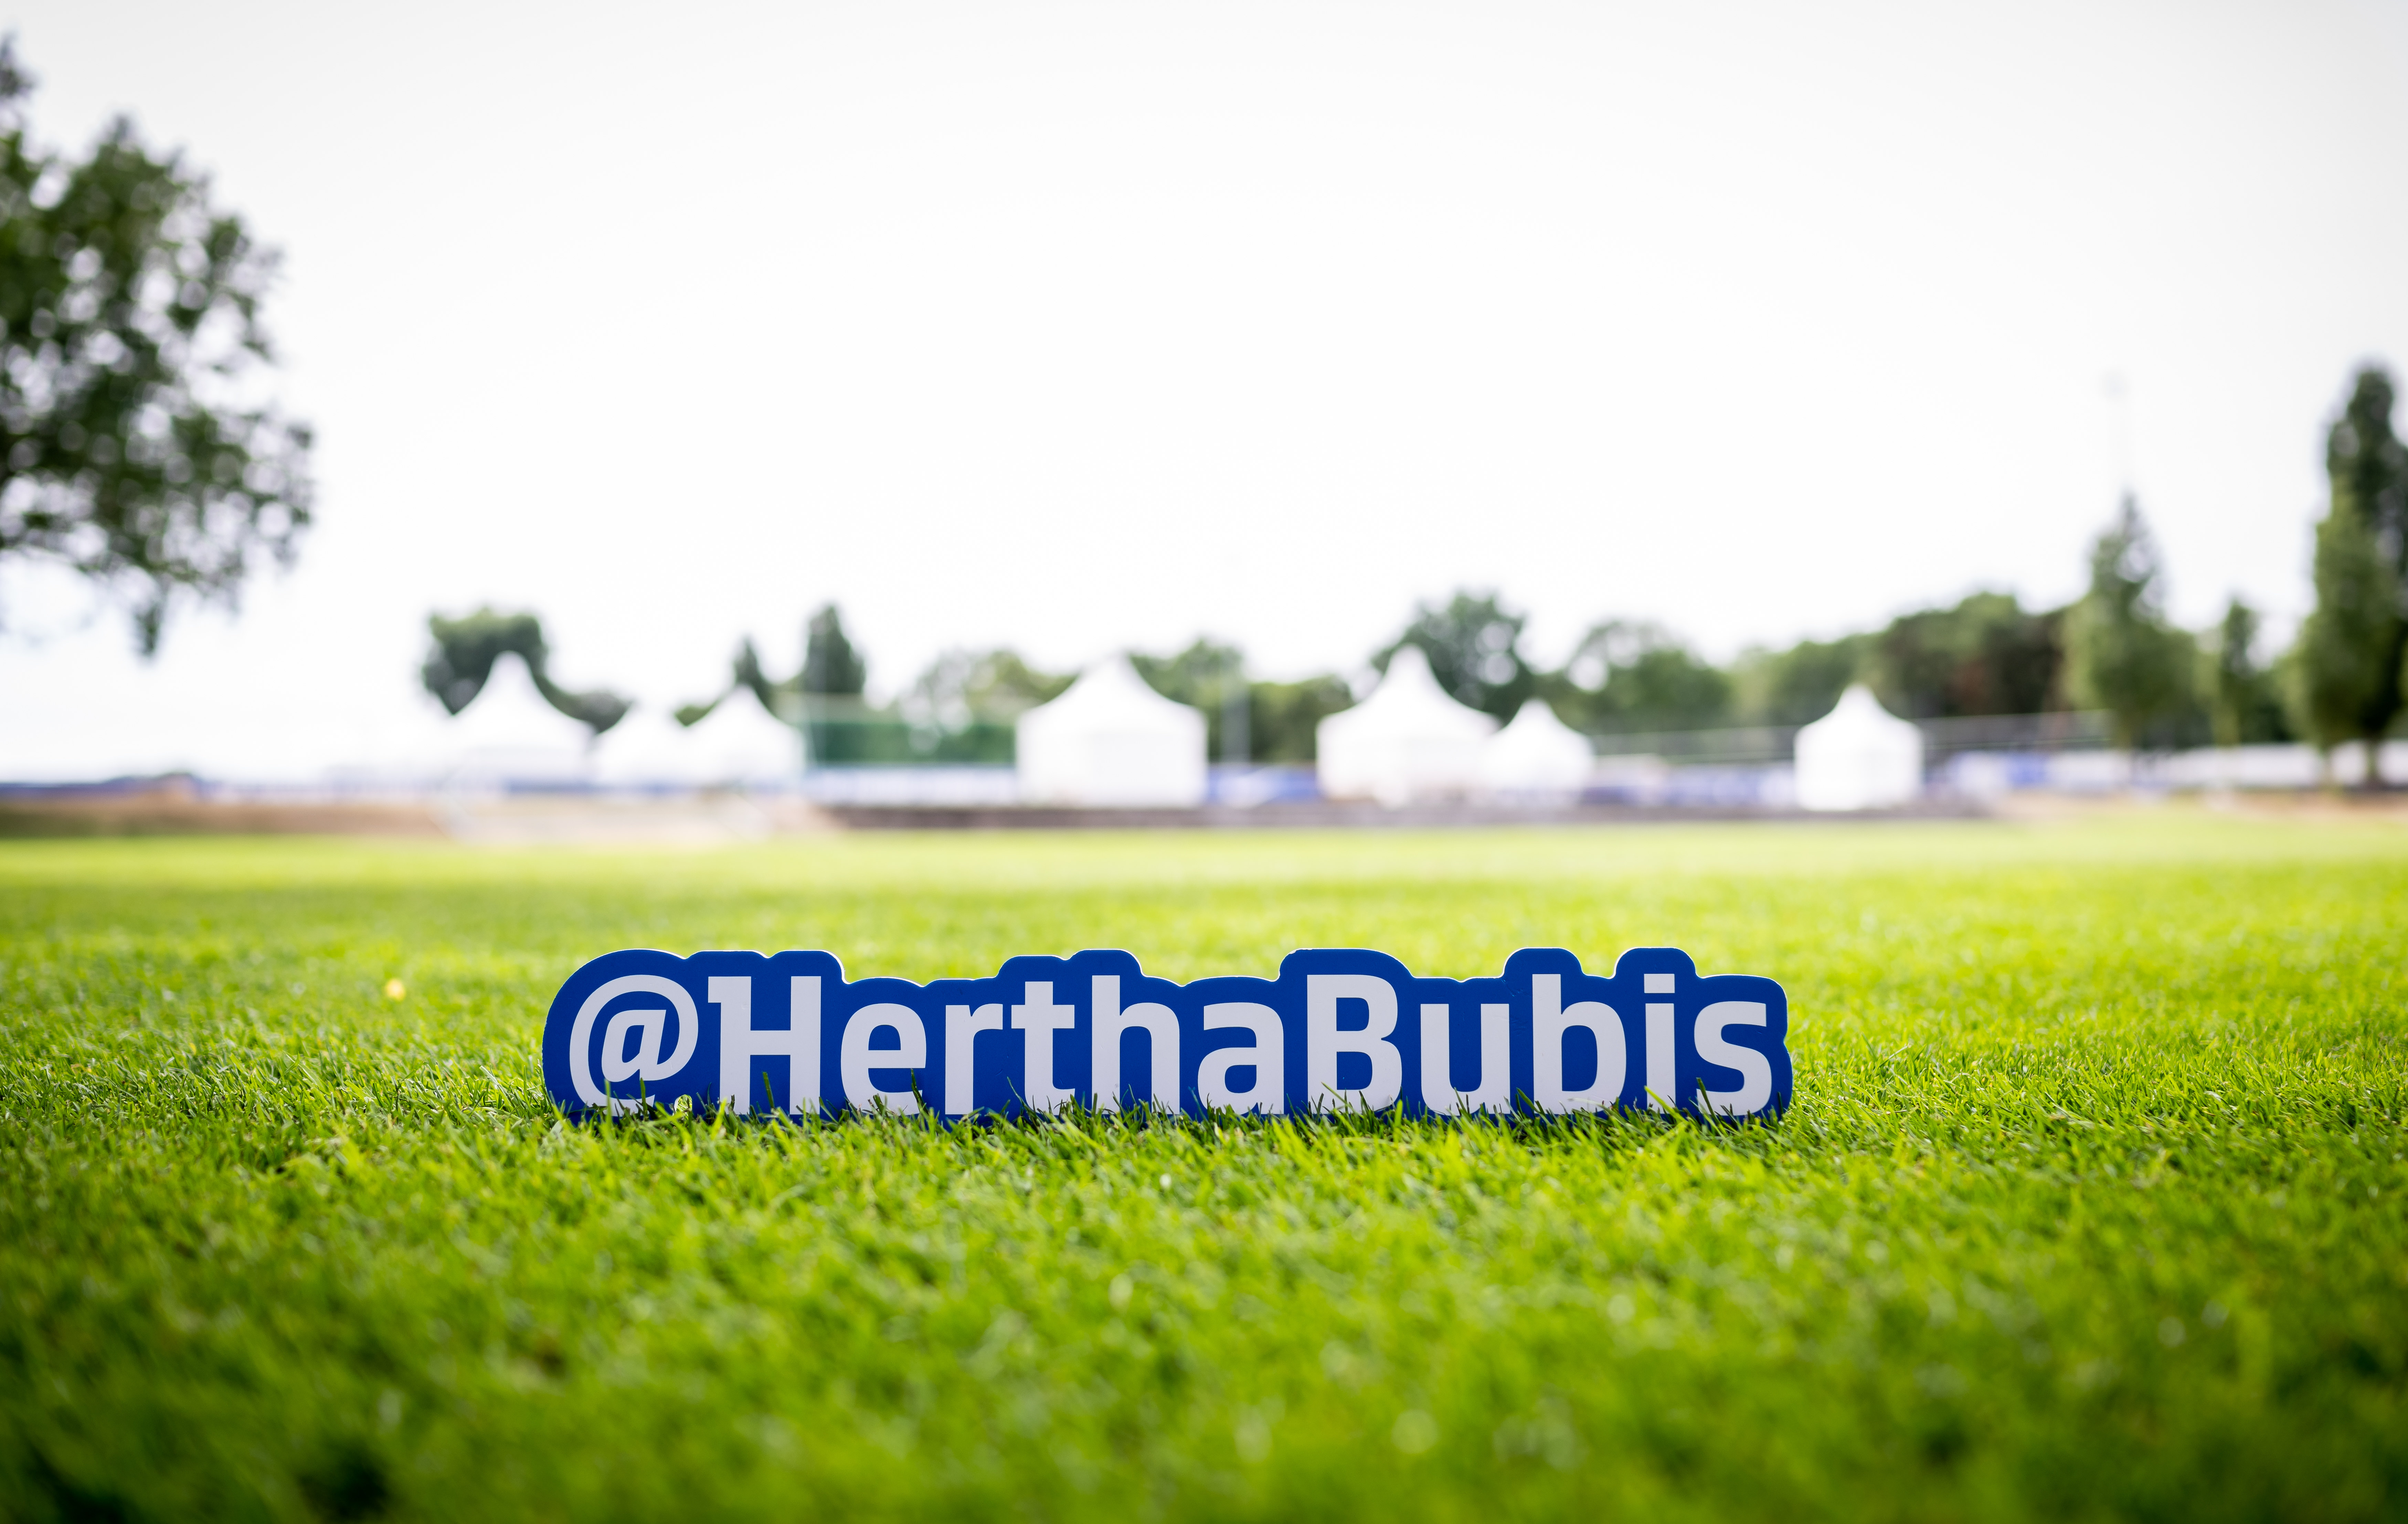 Der Schriftzug "Hertha-Bubis" auf dem Trainingsplatz unserer U23.